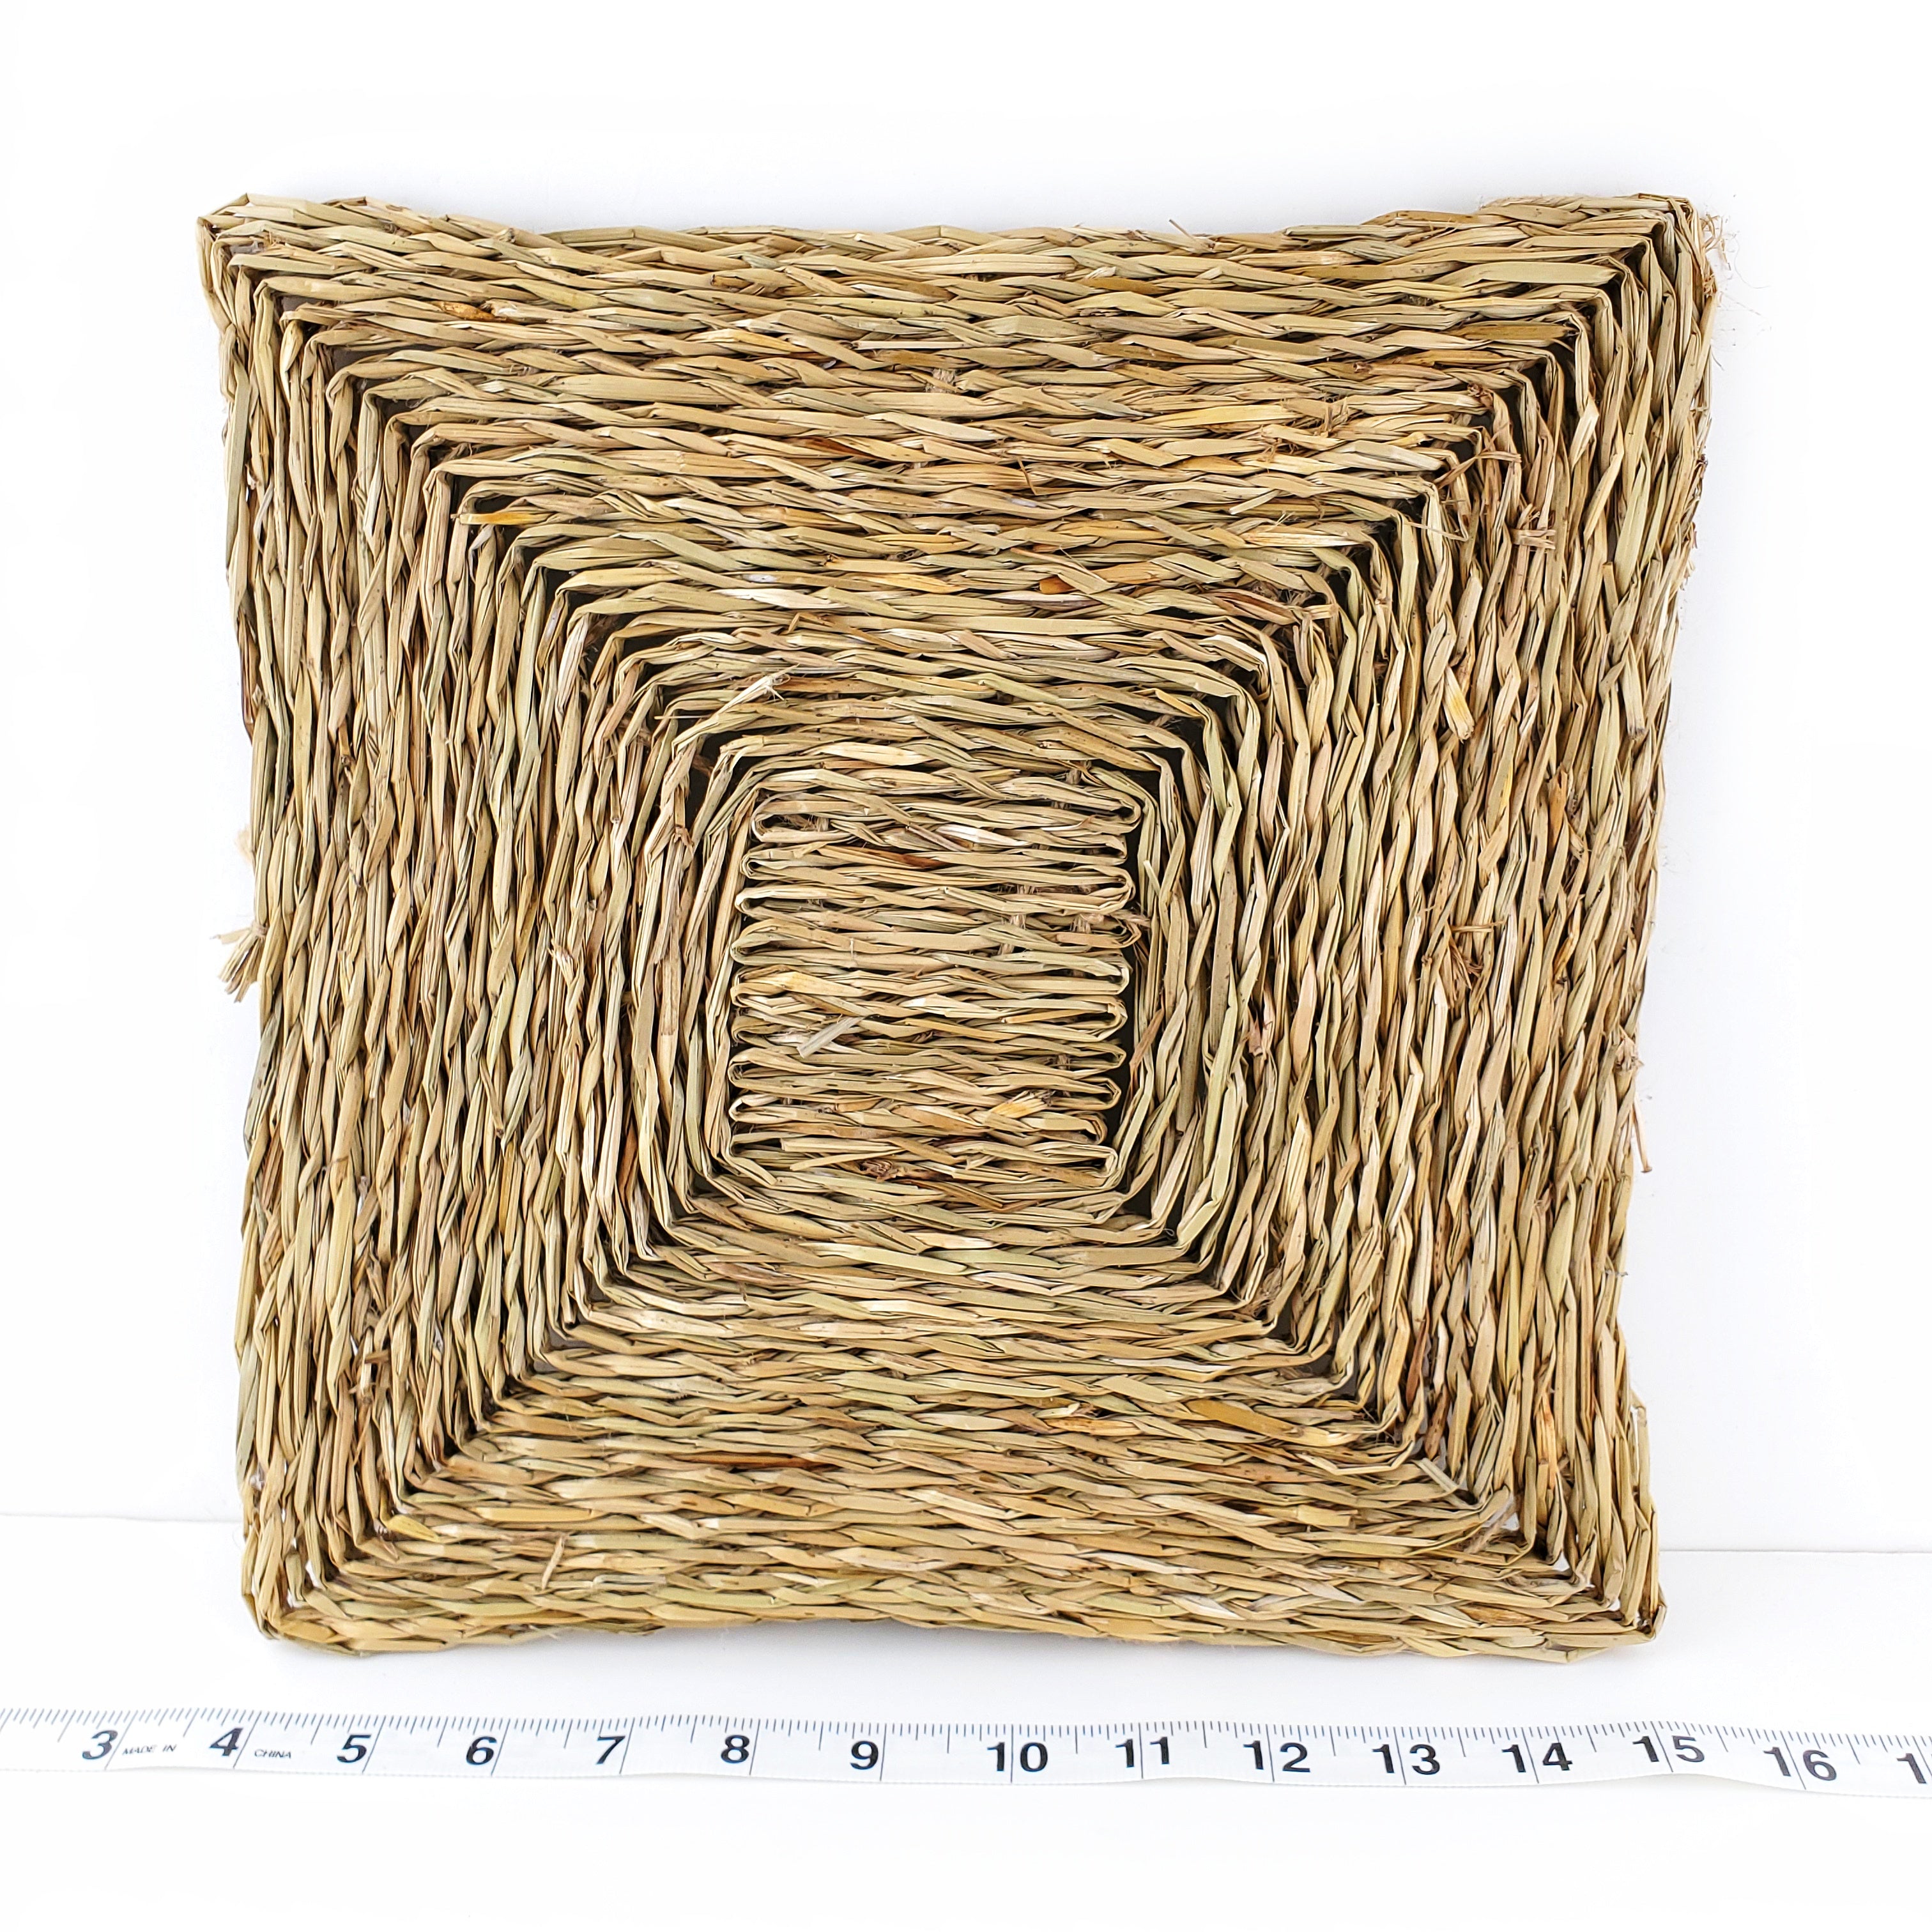 12" Woven Grass Mat